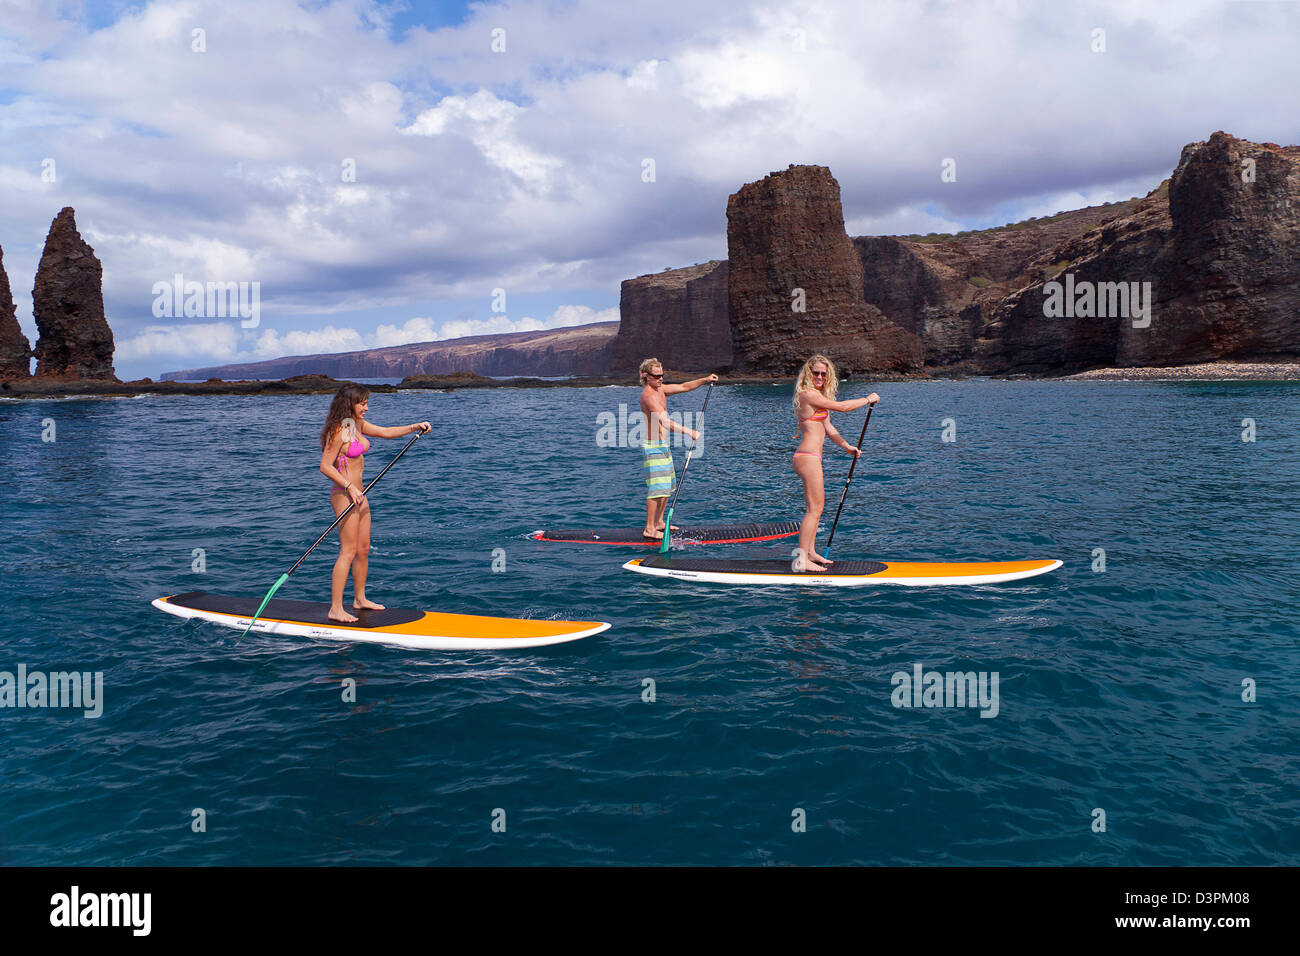 Tre giovani in stand up paddle boards in corrispondenza degli aghi al largo dell'isola di Lanai, Hawaii. Tutti e tre sono del modello rilasciato. Foto Stock